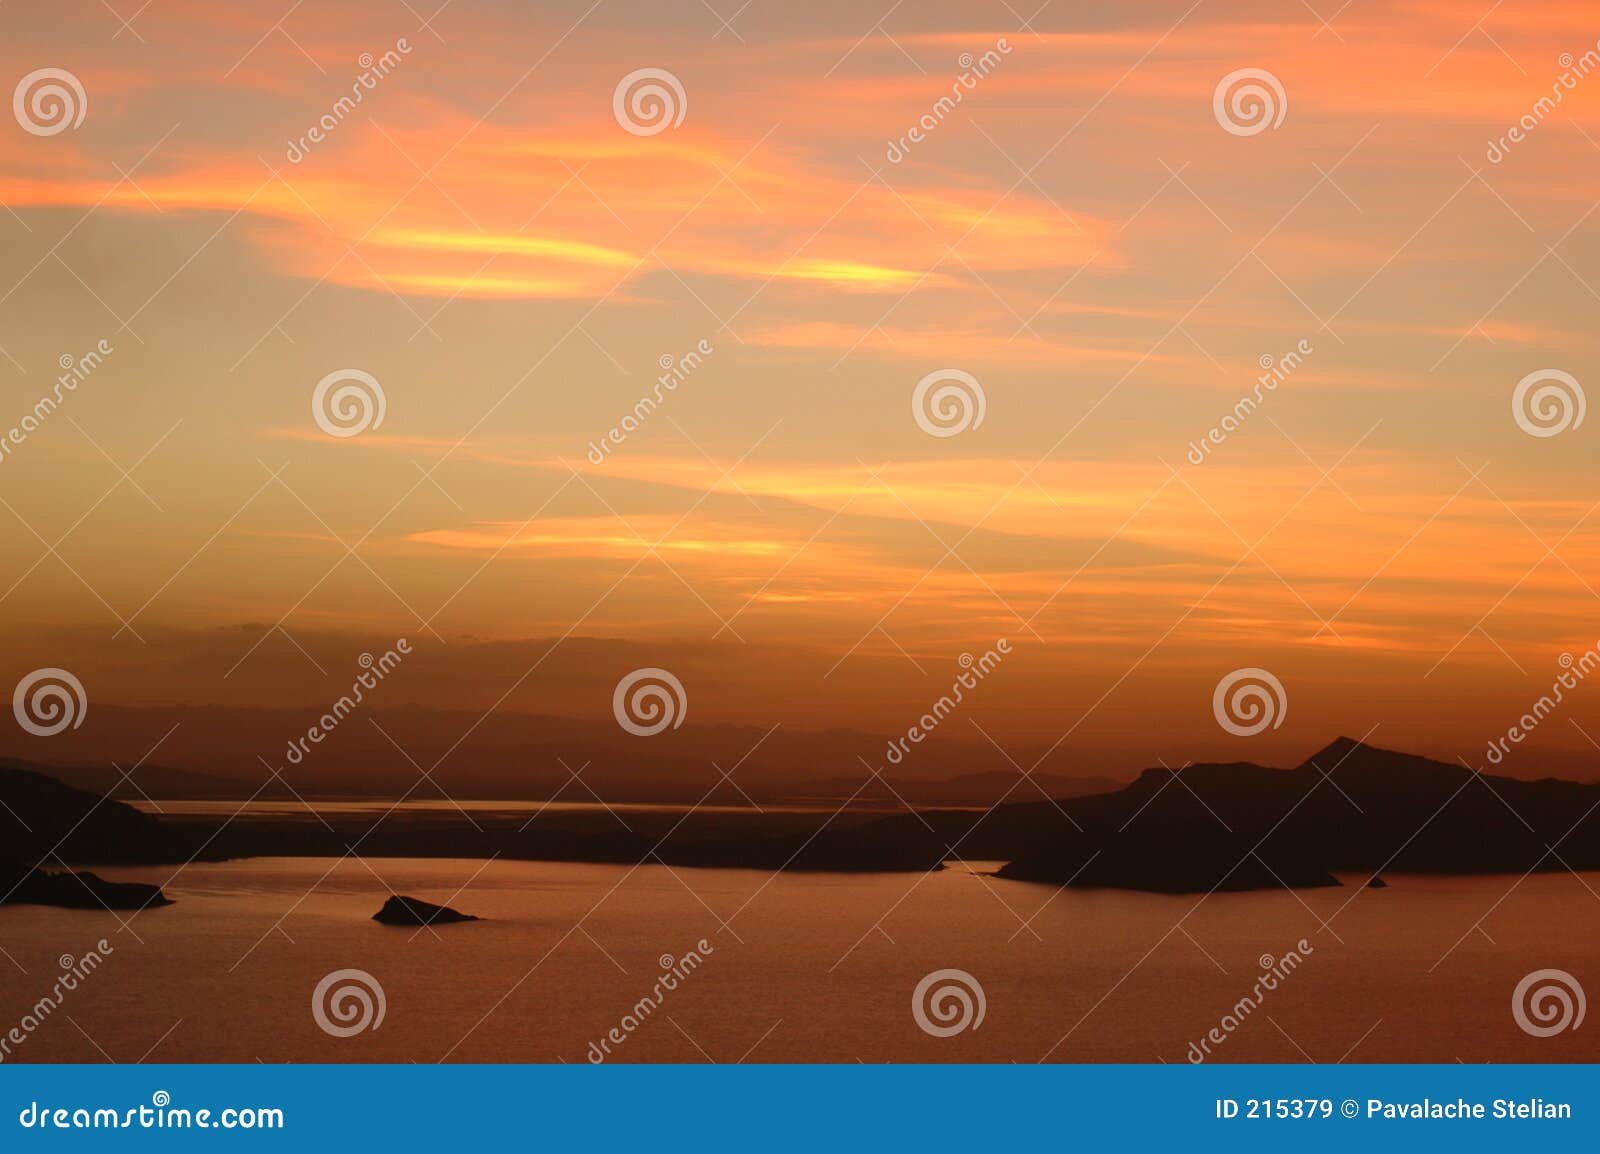 titicaca lake on sunset #3